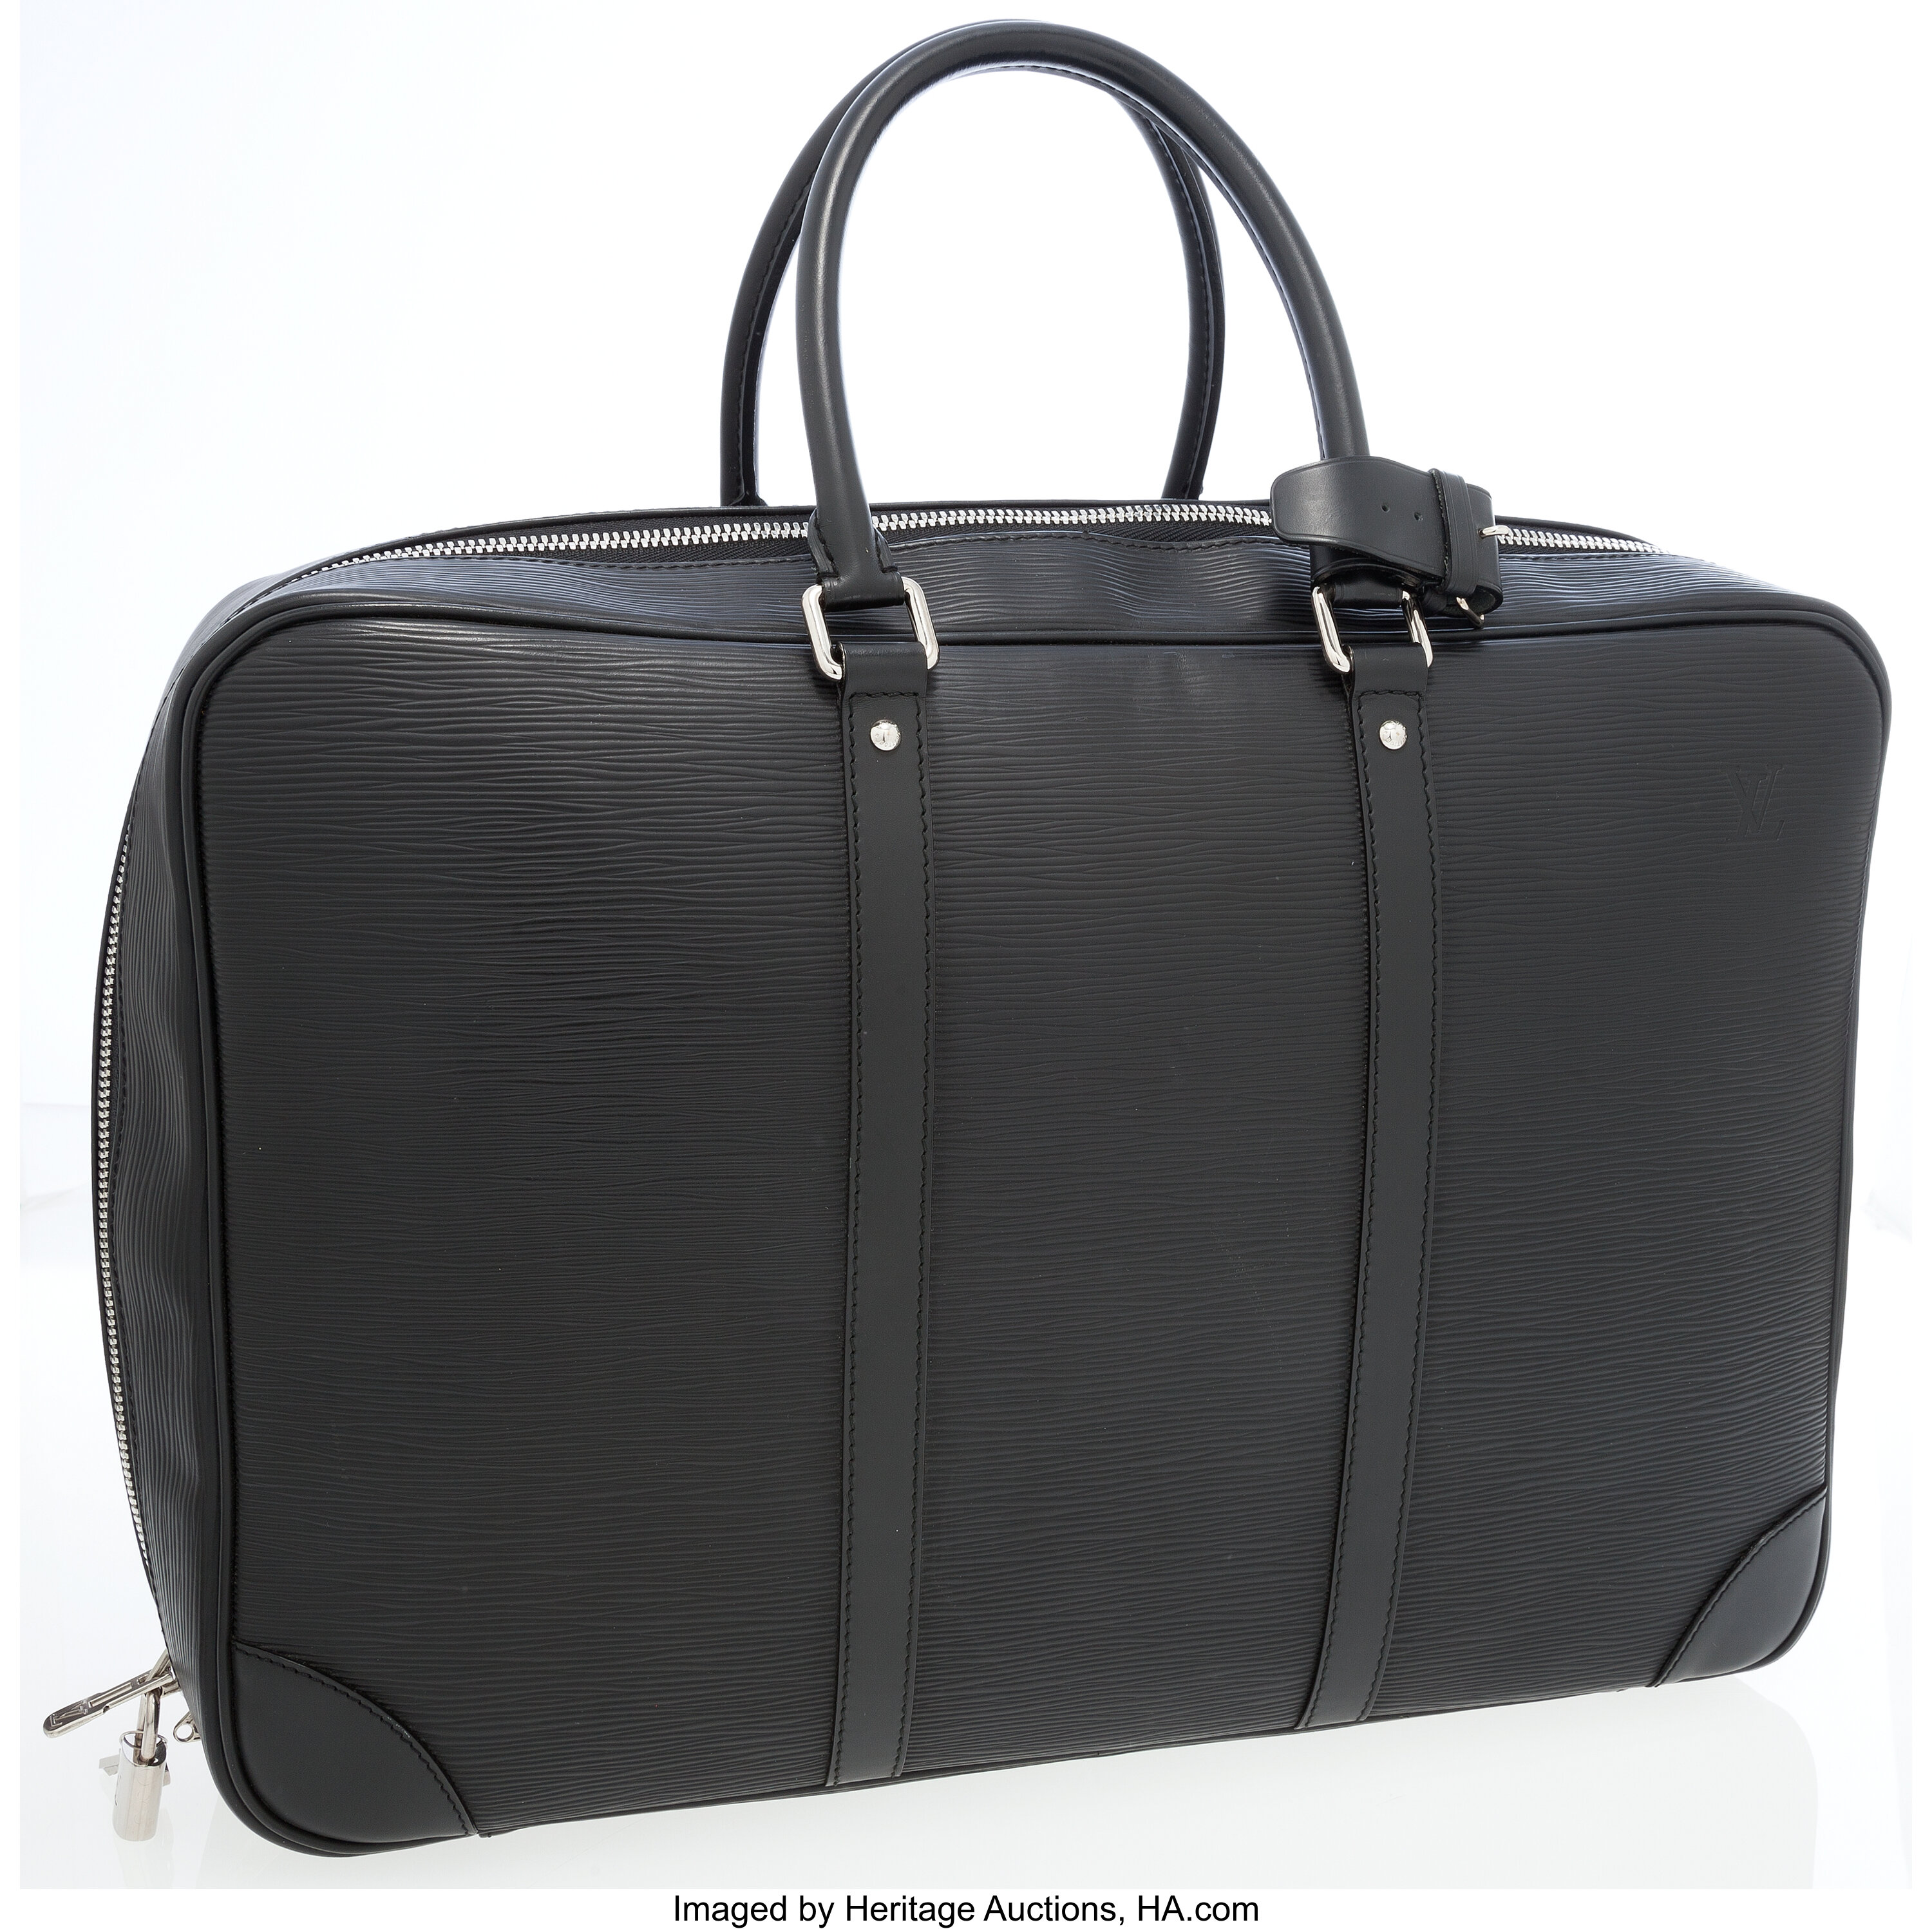 Louis Vuitton Black Beauty case for Sale in Online Auctions